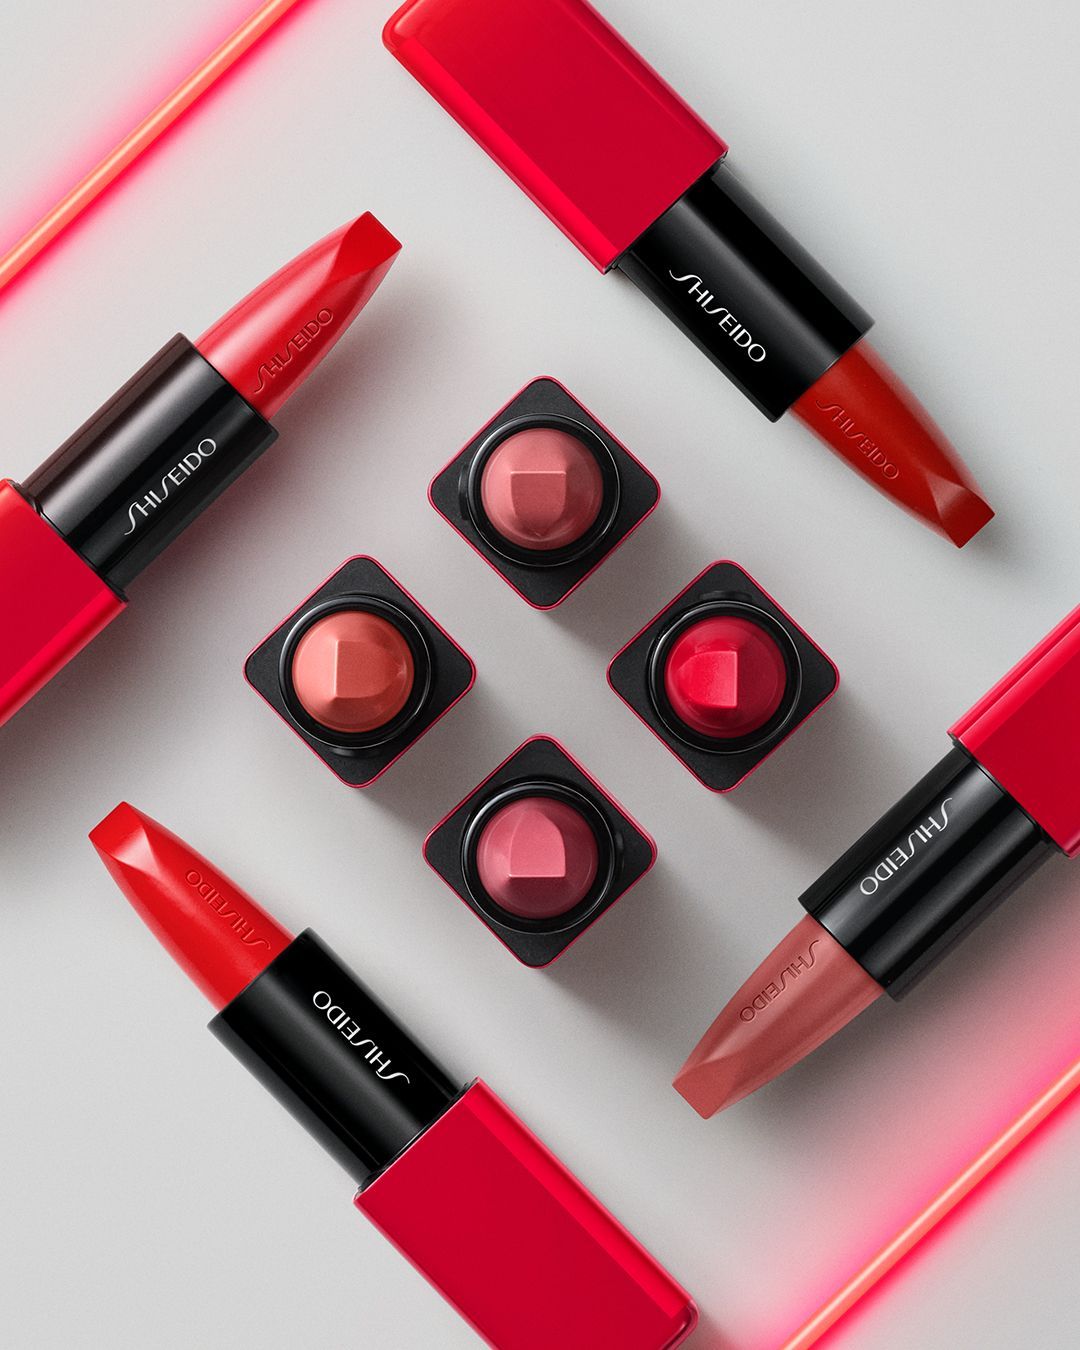 Batom TechnoSatin Gel da Shiseido chega ao Brasil